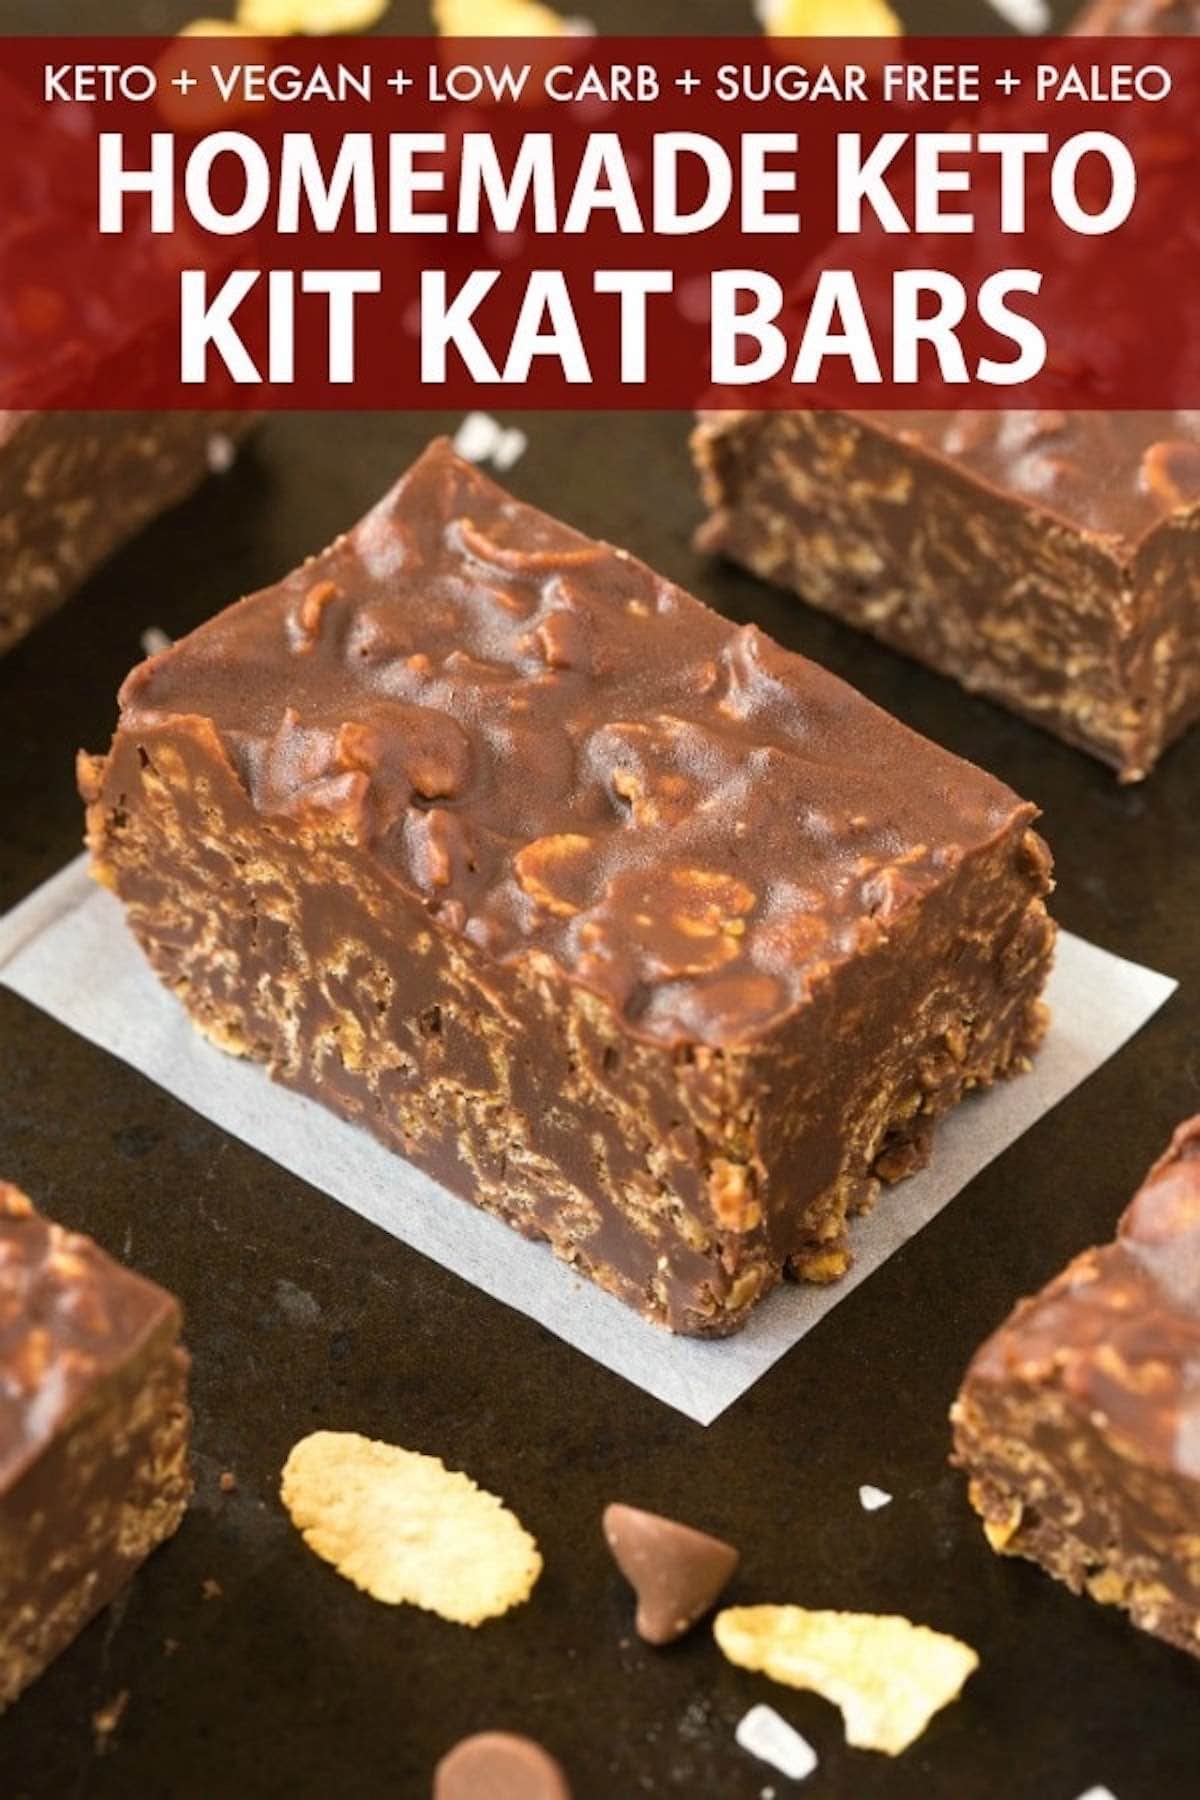 low sugar kit kat bars.